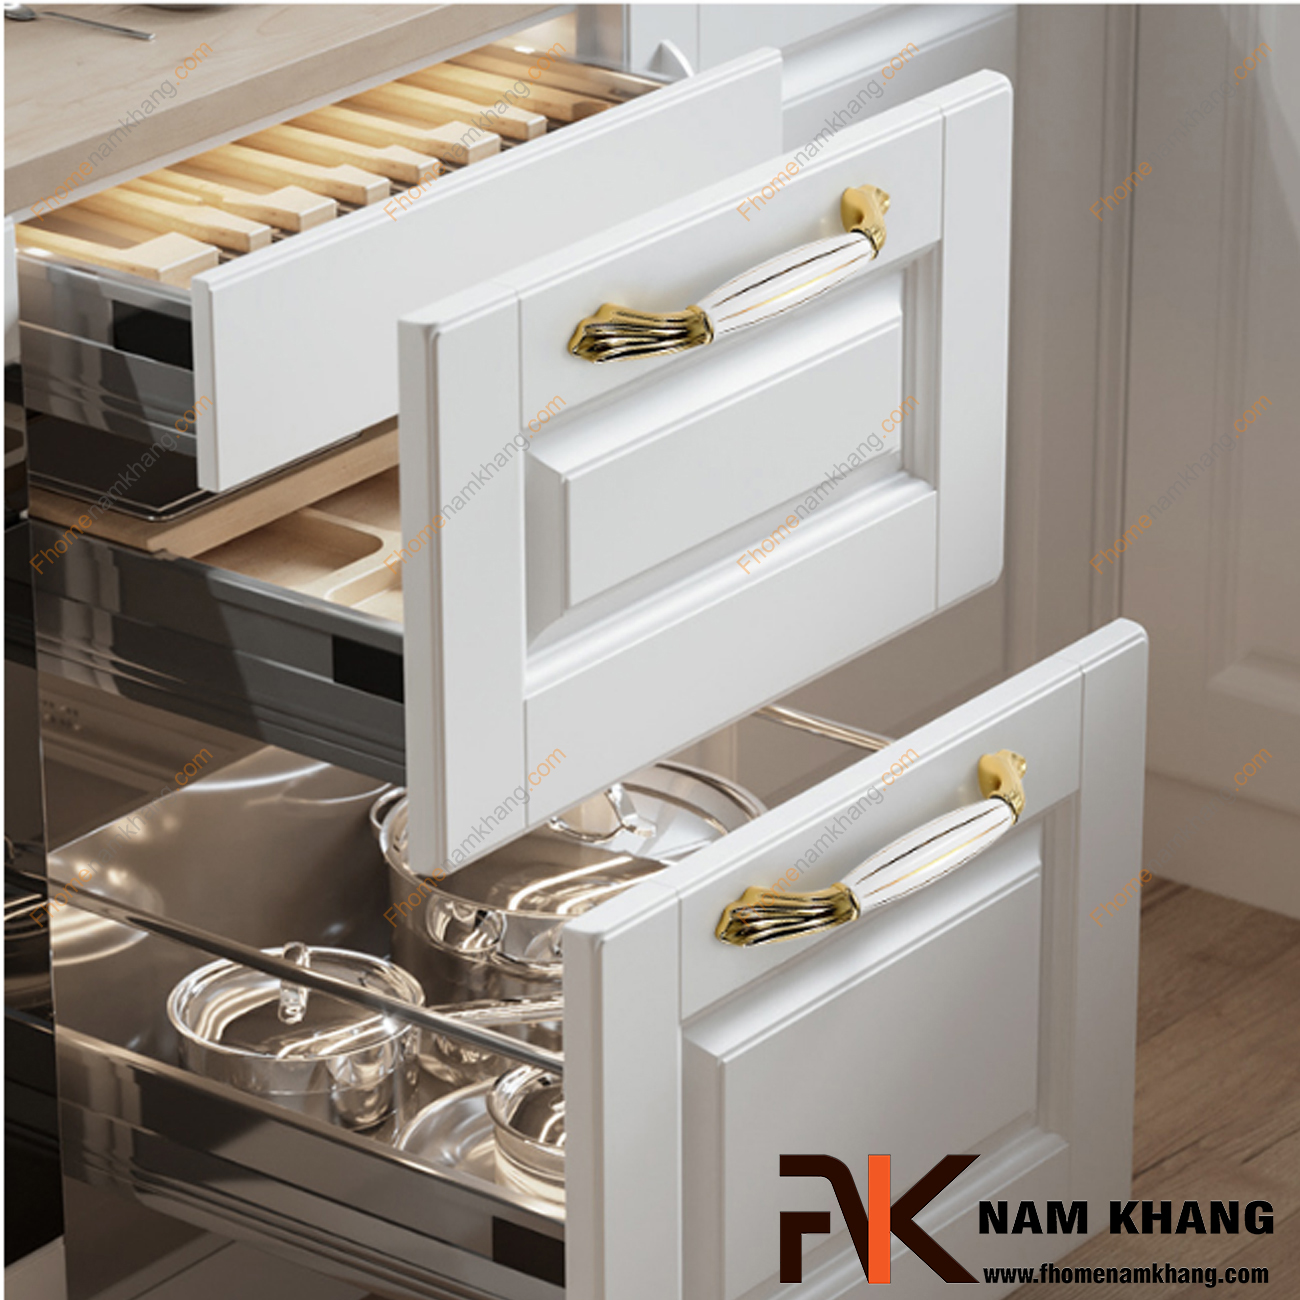 Tay nắm tủ bếp sứ trắng vàng NK177-TV sử dụng hiệu quả và có thể phối hợp với nhiều phong cách tủ kệ, vừa thao tác thuận lợi nhưng vẫn giữ được nét sang trọng cao cấp.